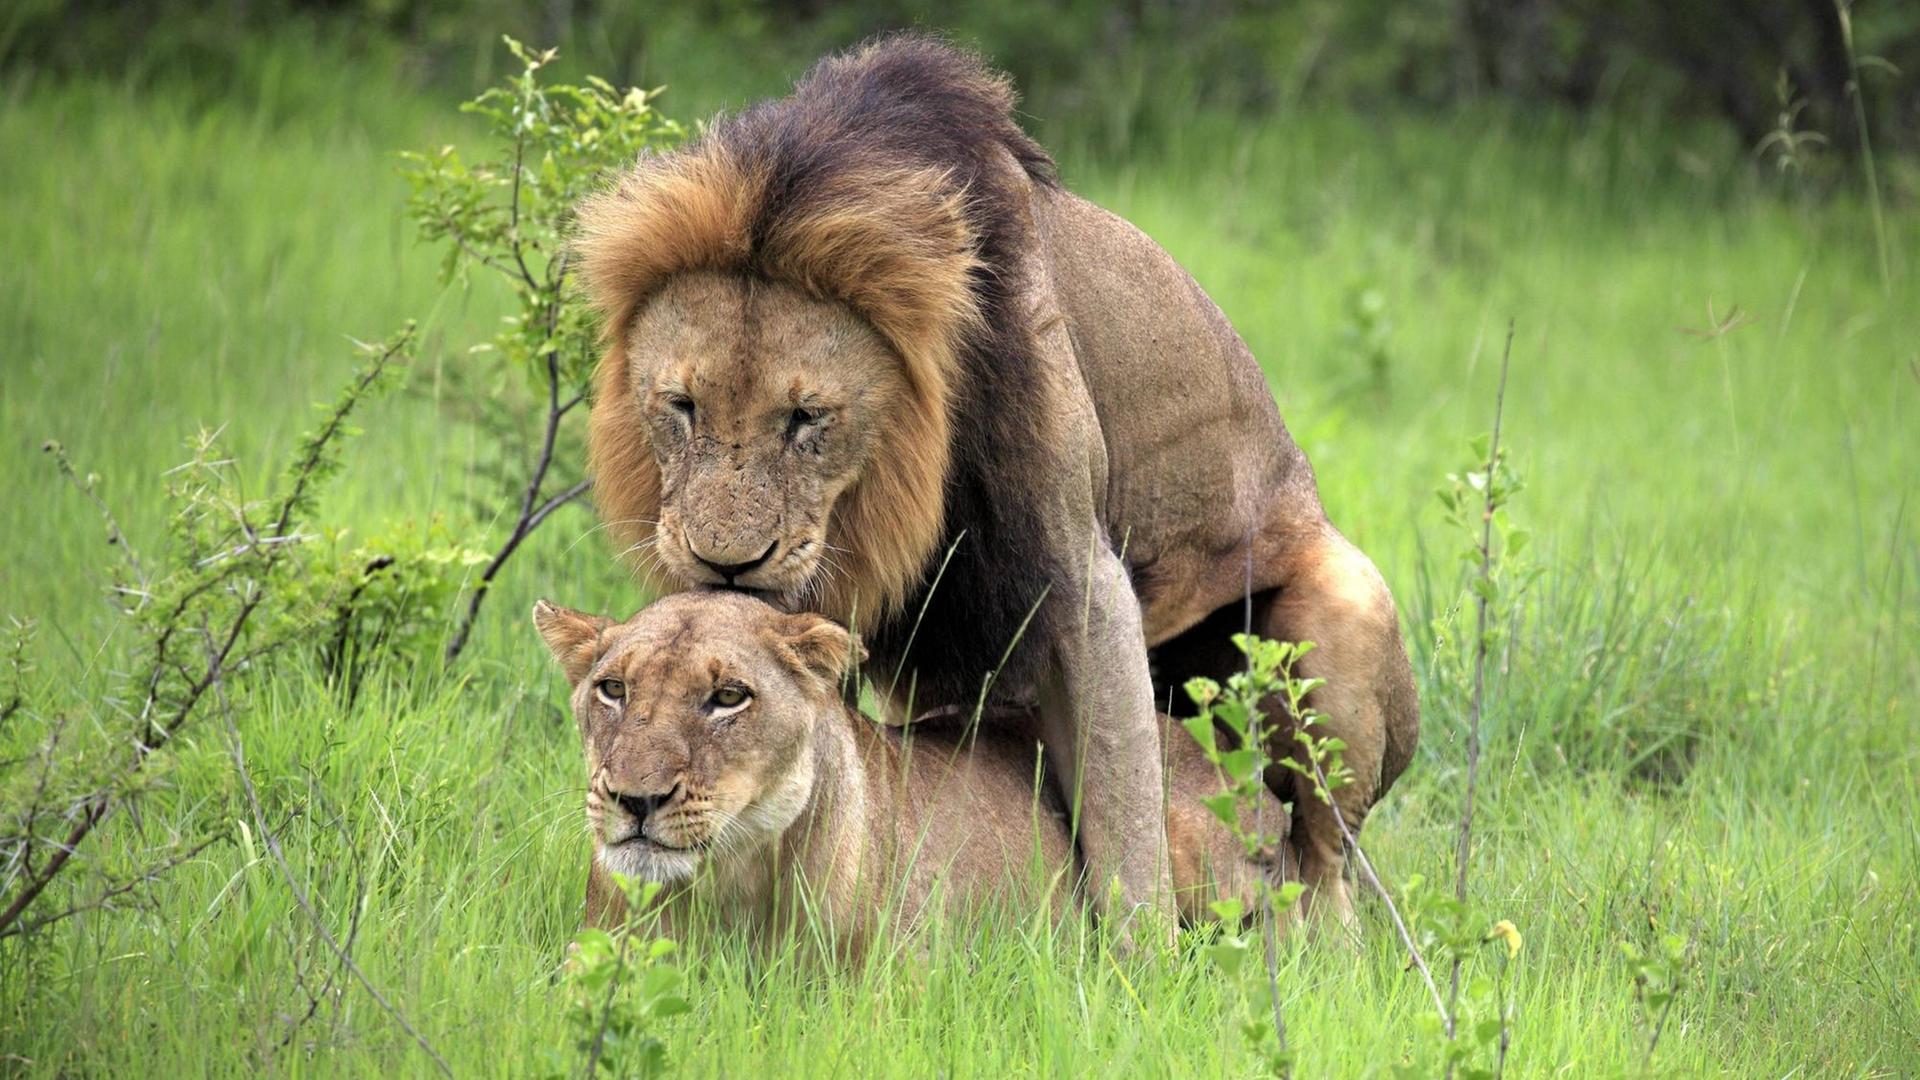 Der Penisknochen ist ein Knochen im männlichen Begattungsorgan vieler Säugetiere – etwa bei Löwen